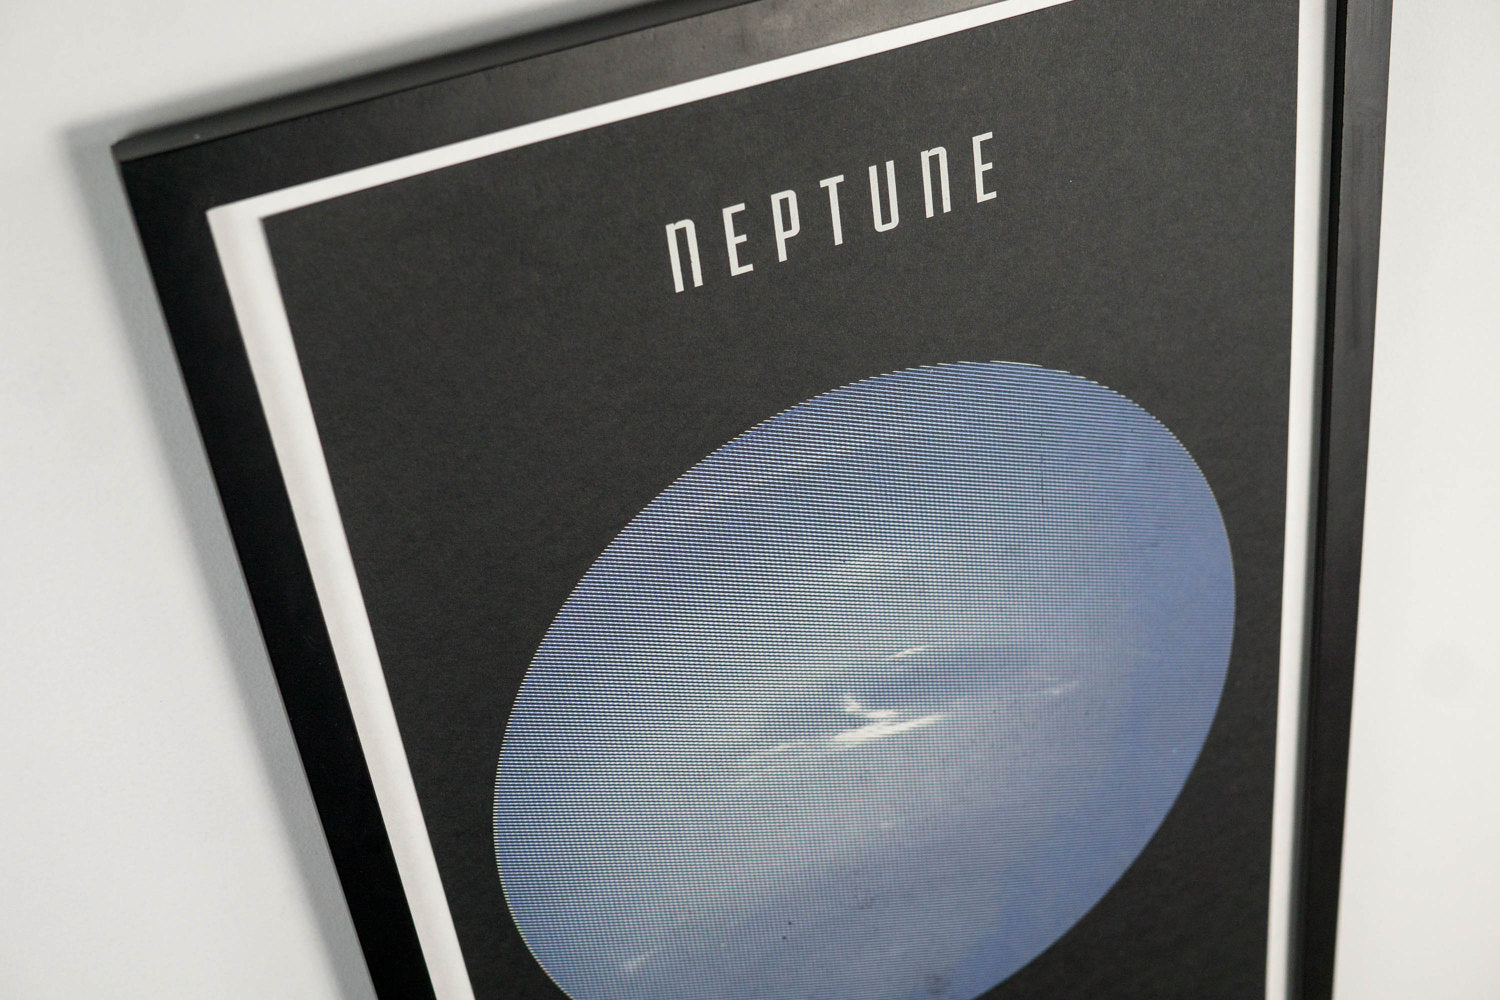 Planet Neptune Poster